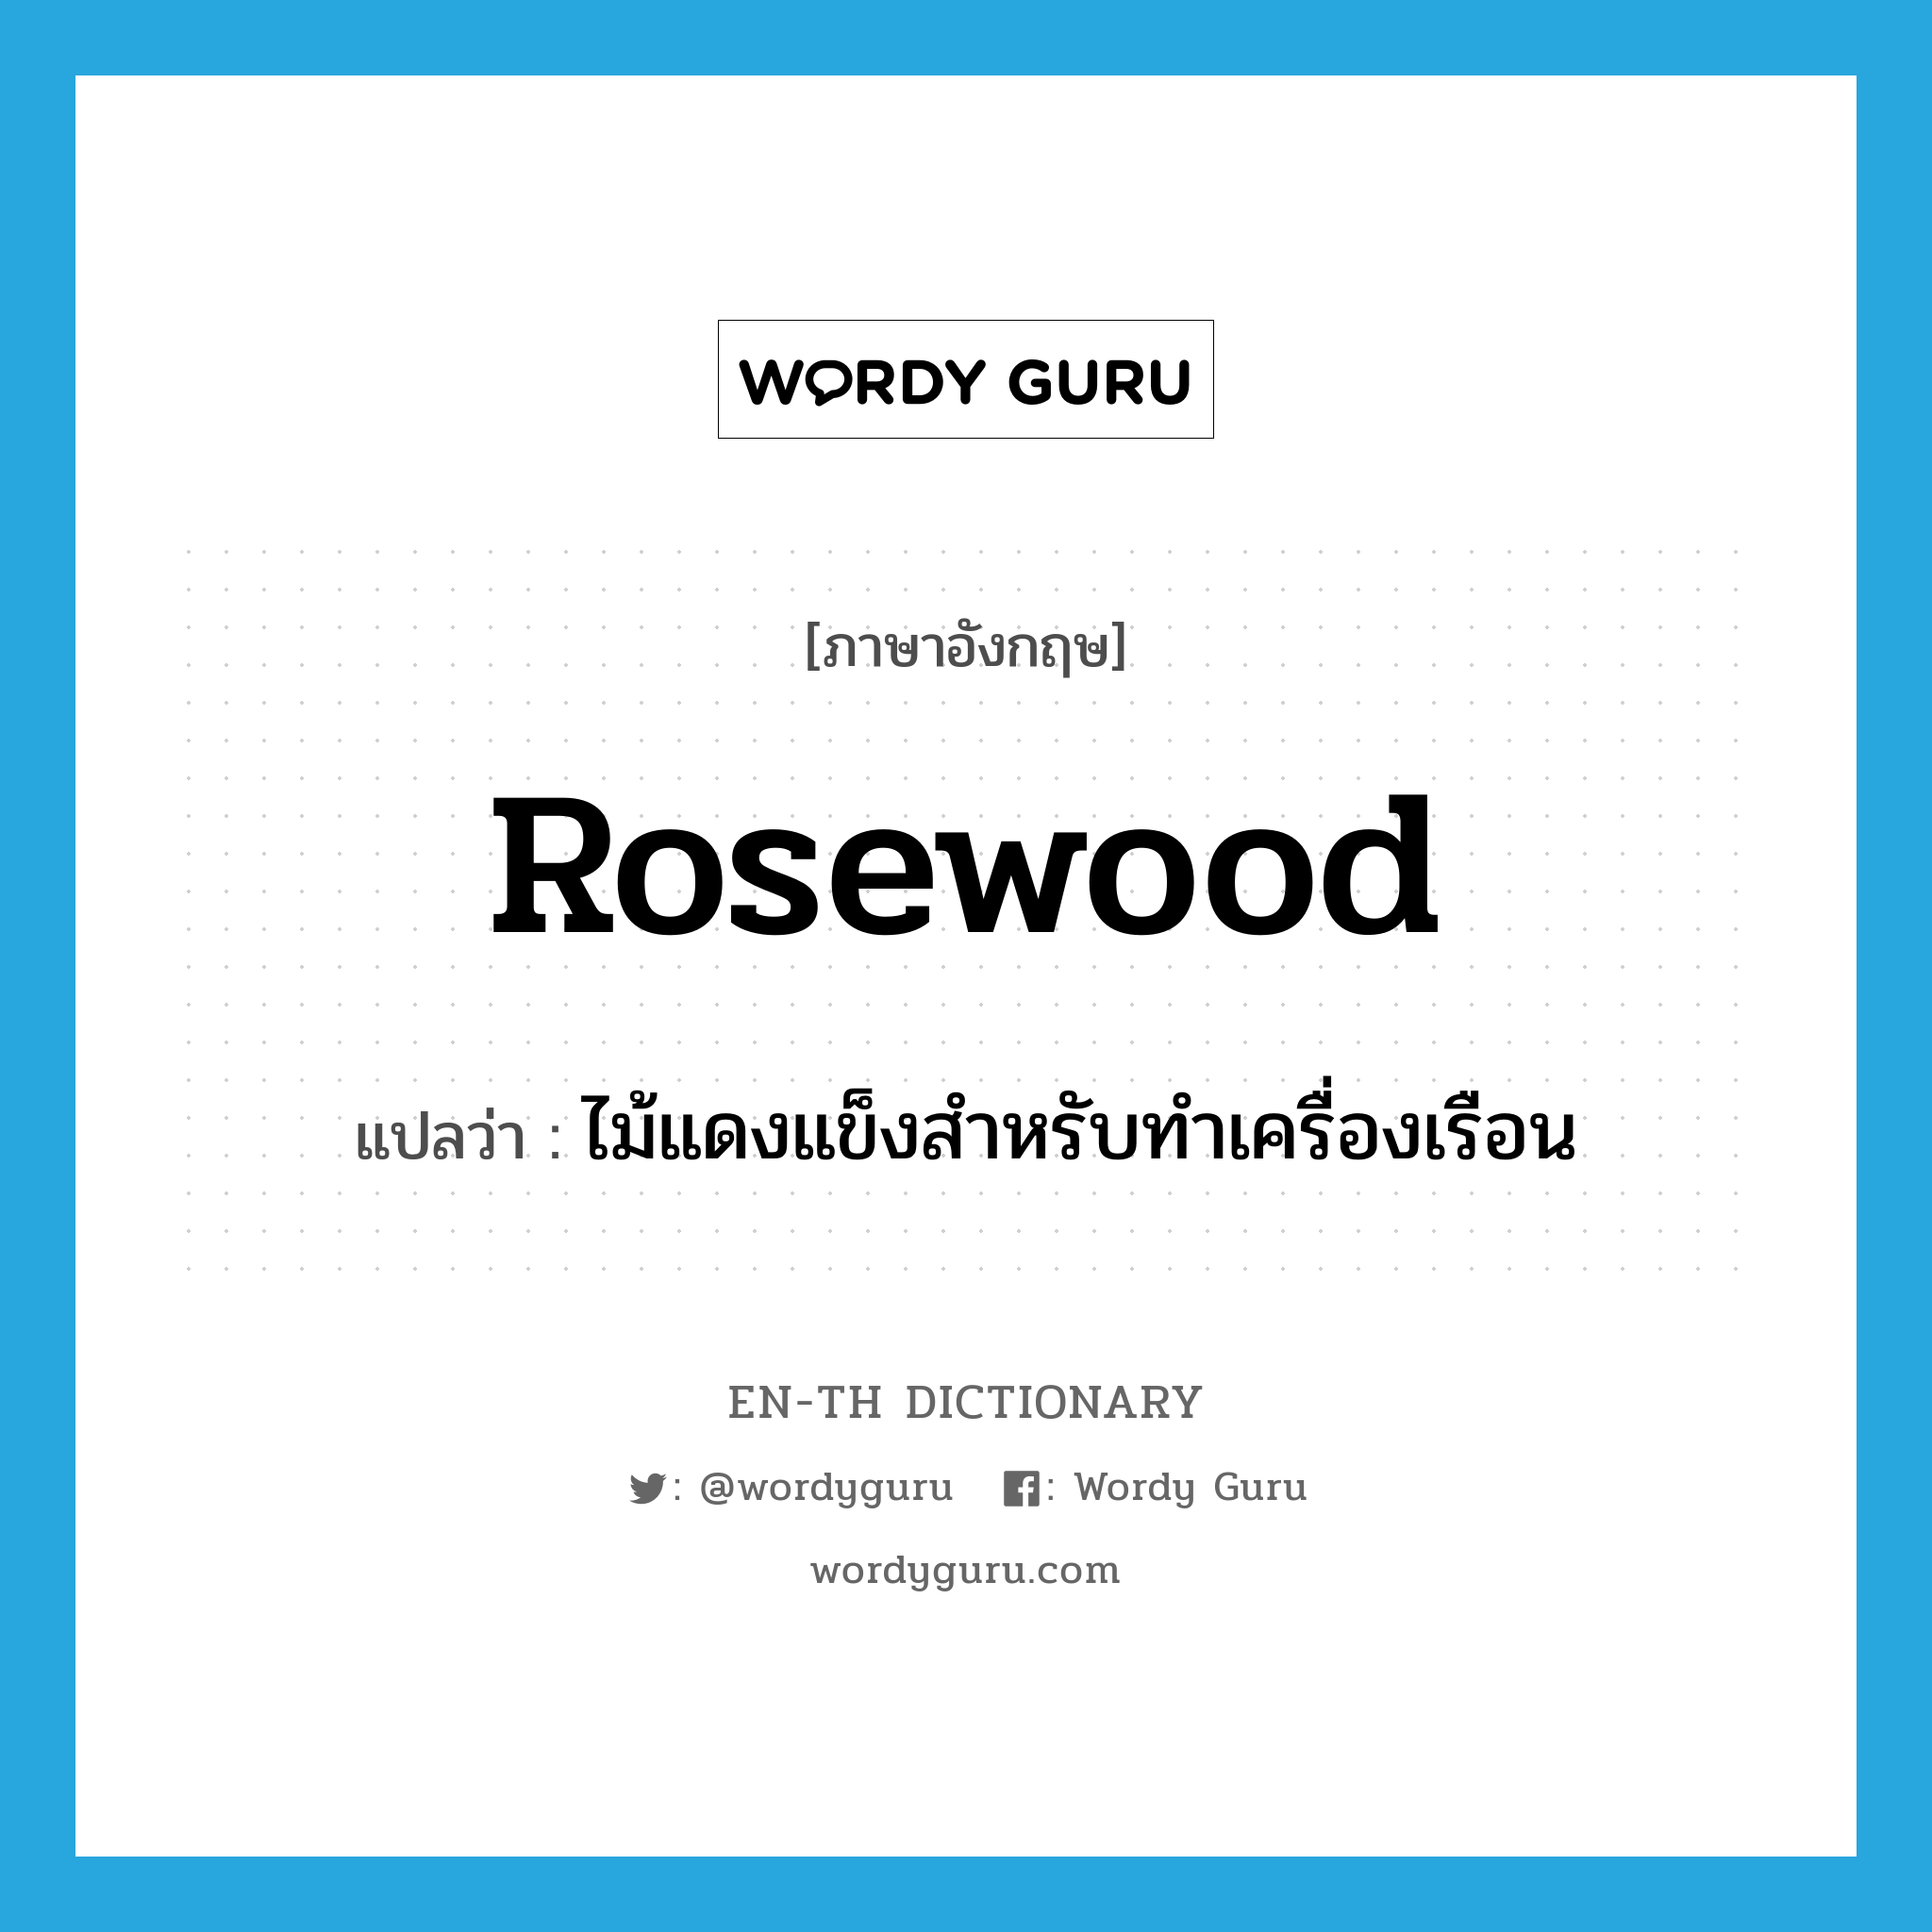 rosewood แปลว่า?, คำศัพท์ภาษาอังกฤษ rosewood แปลว่า ไม้แดงแข็งสำหรับทำเครื่องเรือน ประเภท N หมวด N